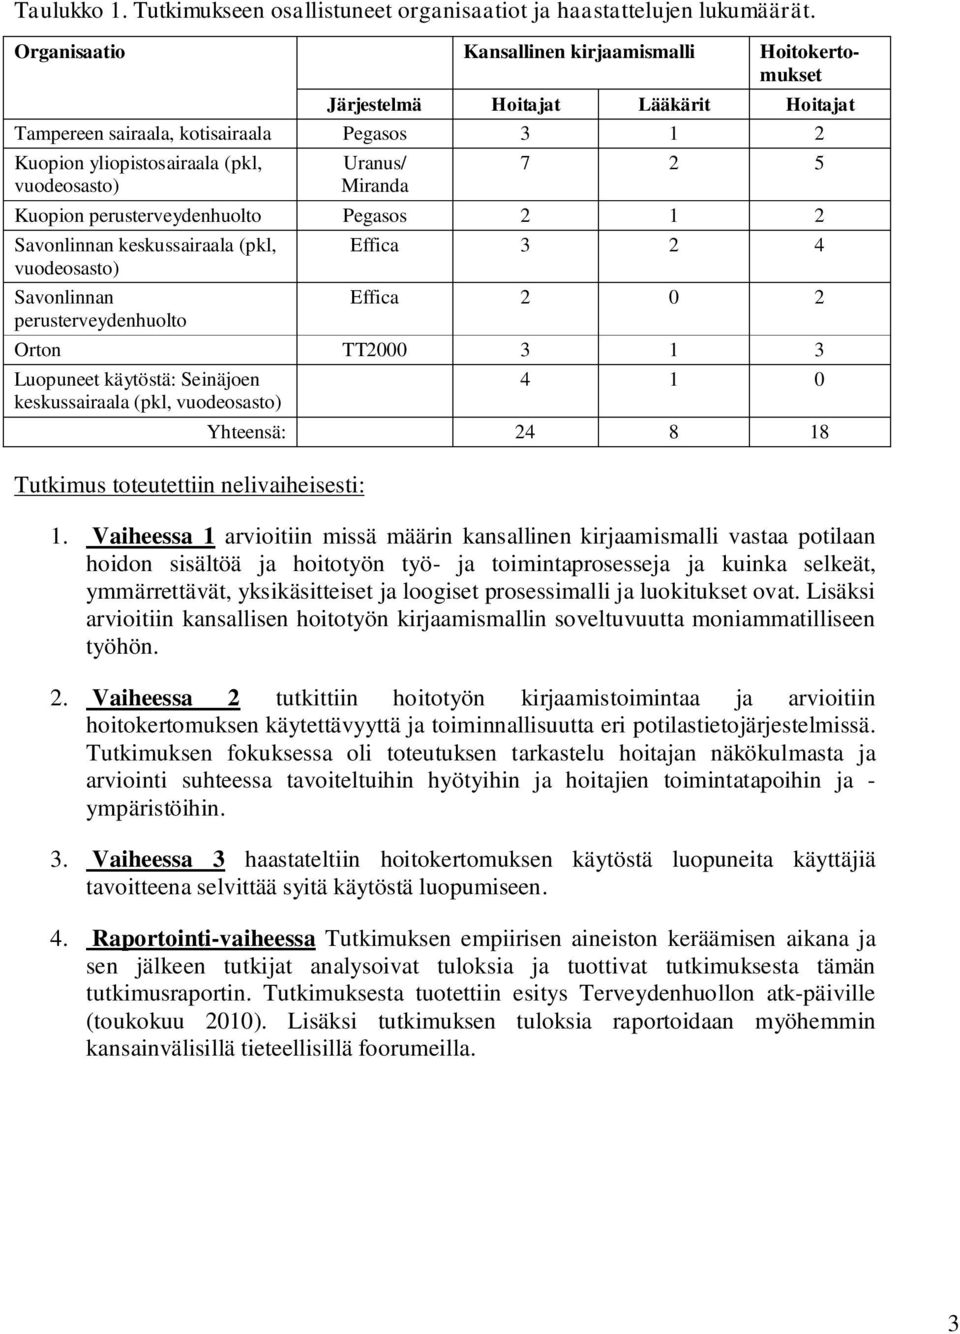 Miranda 7 2 5 Kuopion perusterveydenhuolto Pegasos 2 1 2 Savonlinnan keskussairaala (pkl, vuodeosasto) Savonlinnan perusterveydenhuolto Effica 3 2 4 Effica 2 0 2 Orton TT2000 3 1 3 Luopuneet